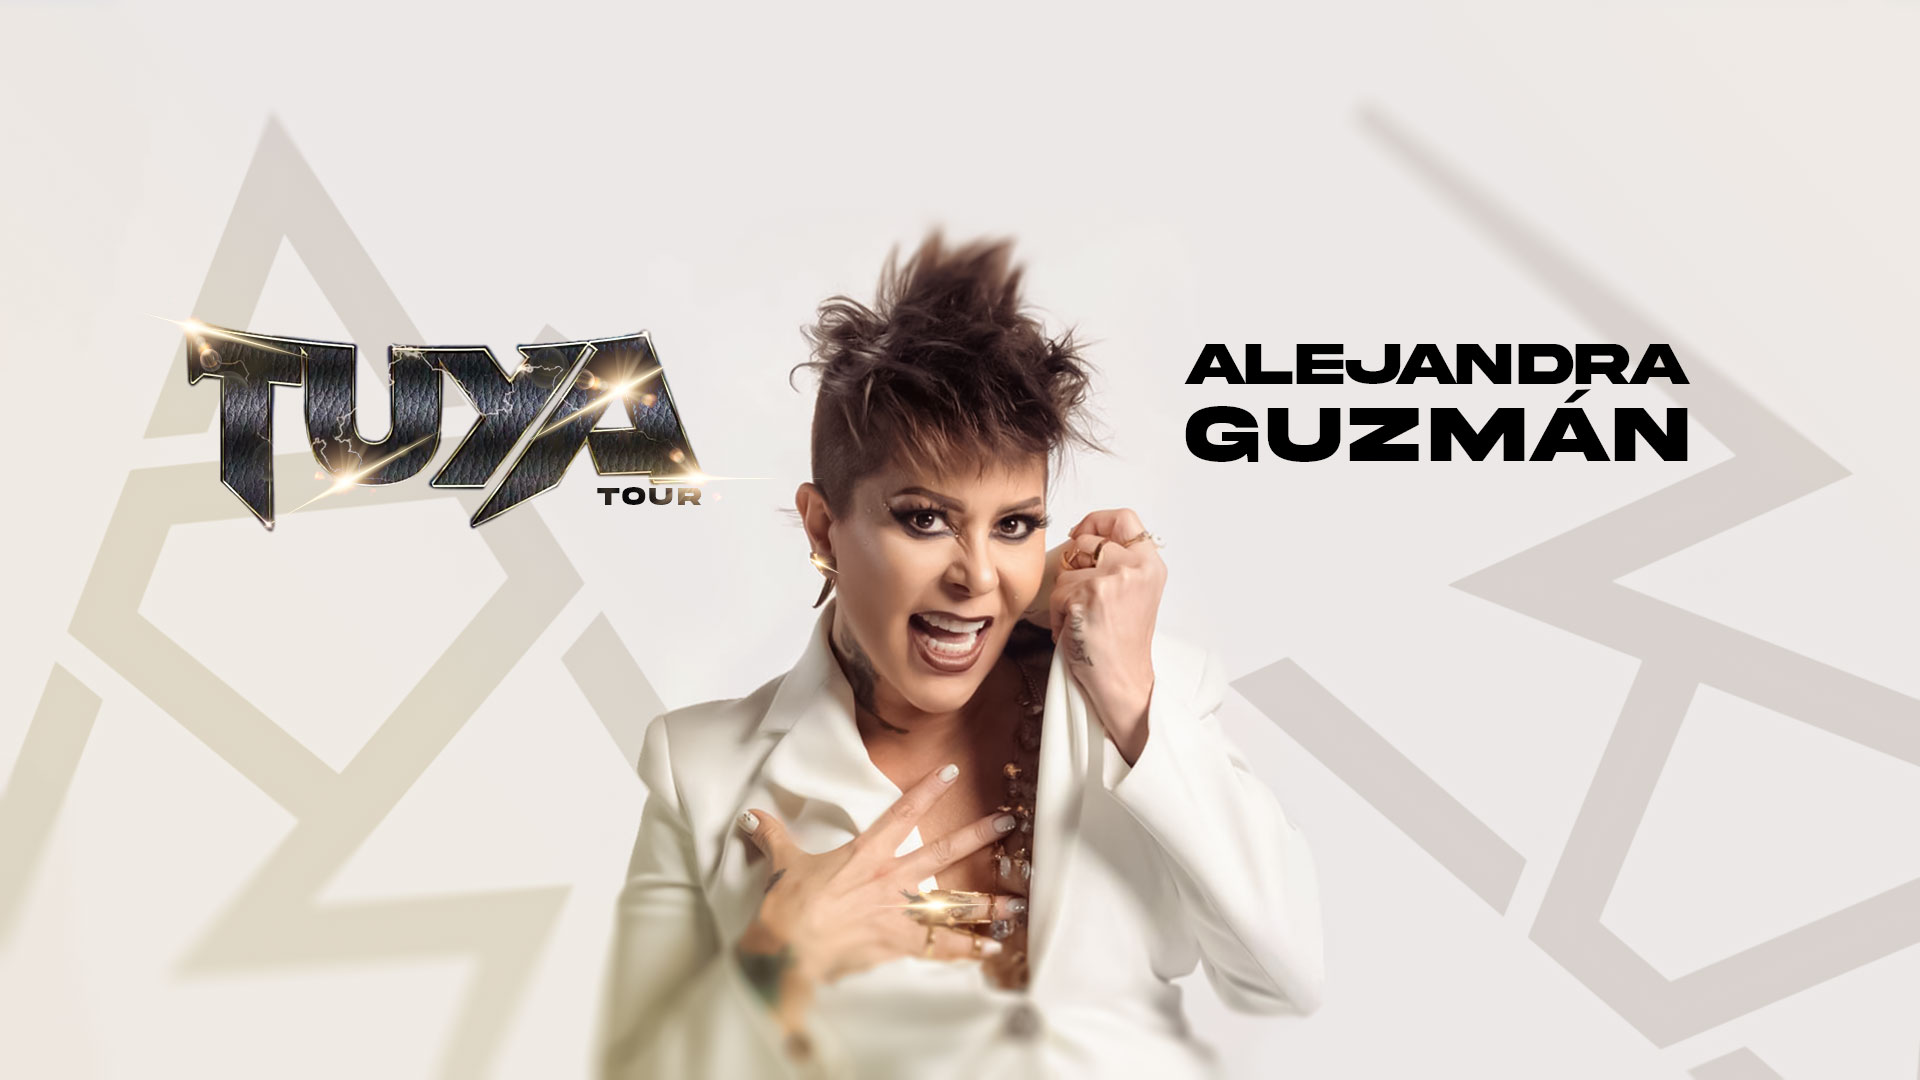 Alejandra Guzmán Y Su Tour ‘TUYA’ Se Presentarán En Las Vegas